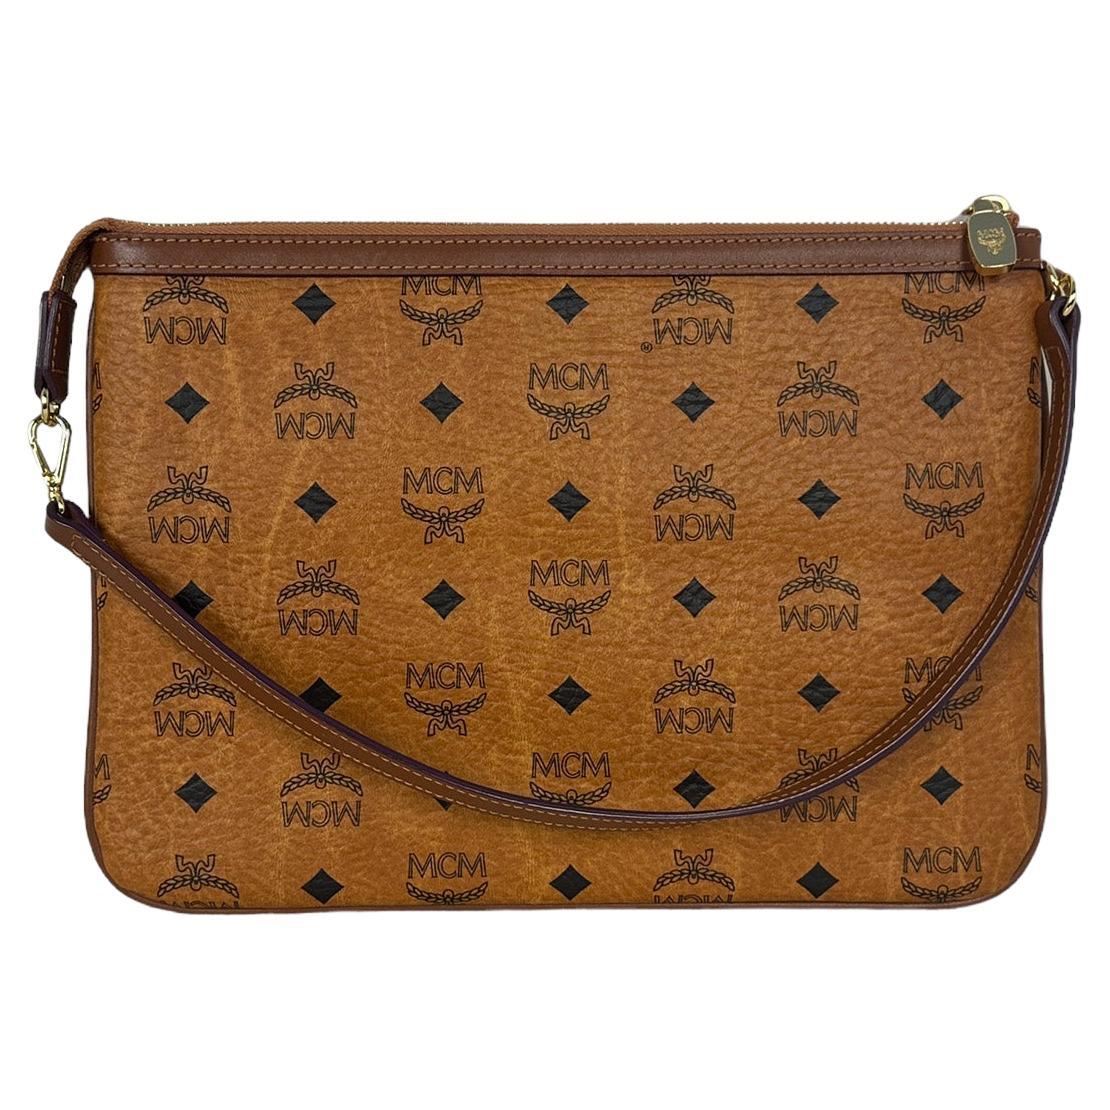 Vintage Mcm Bags For Sale Top Sellers | website.jkuat.ac.ke